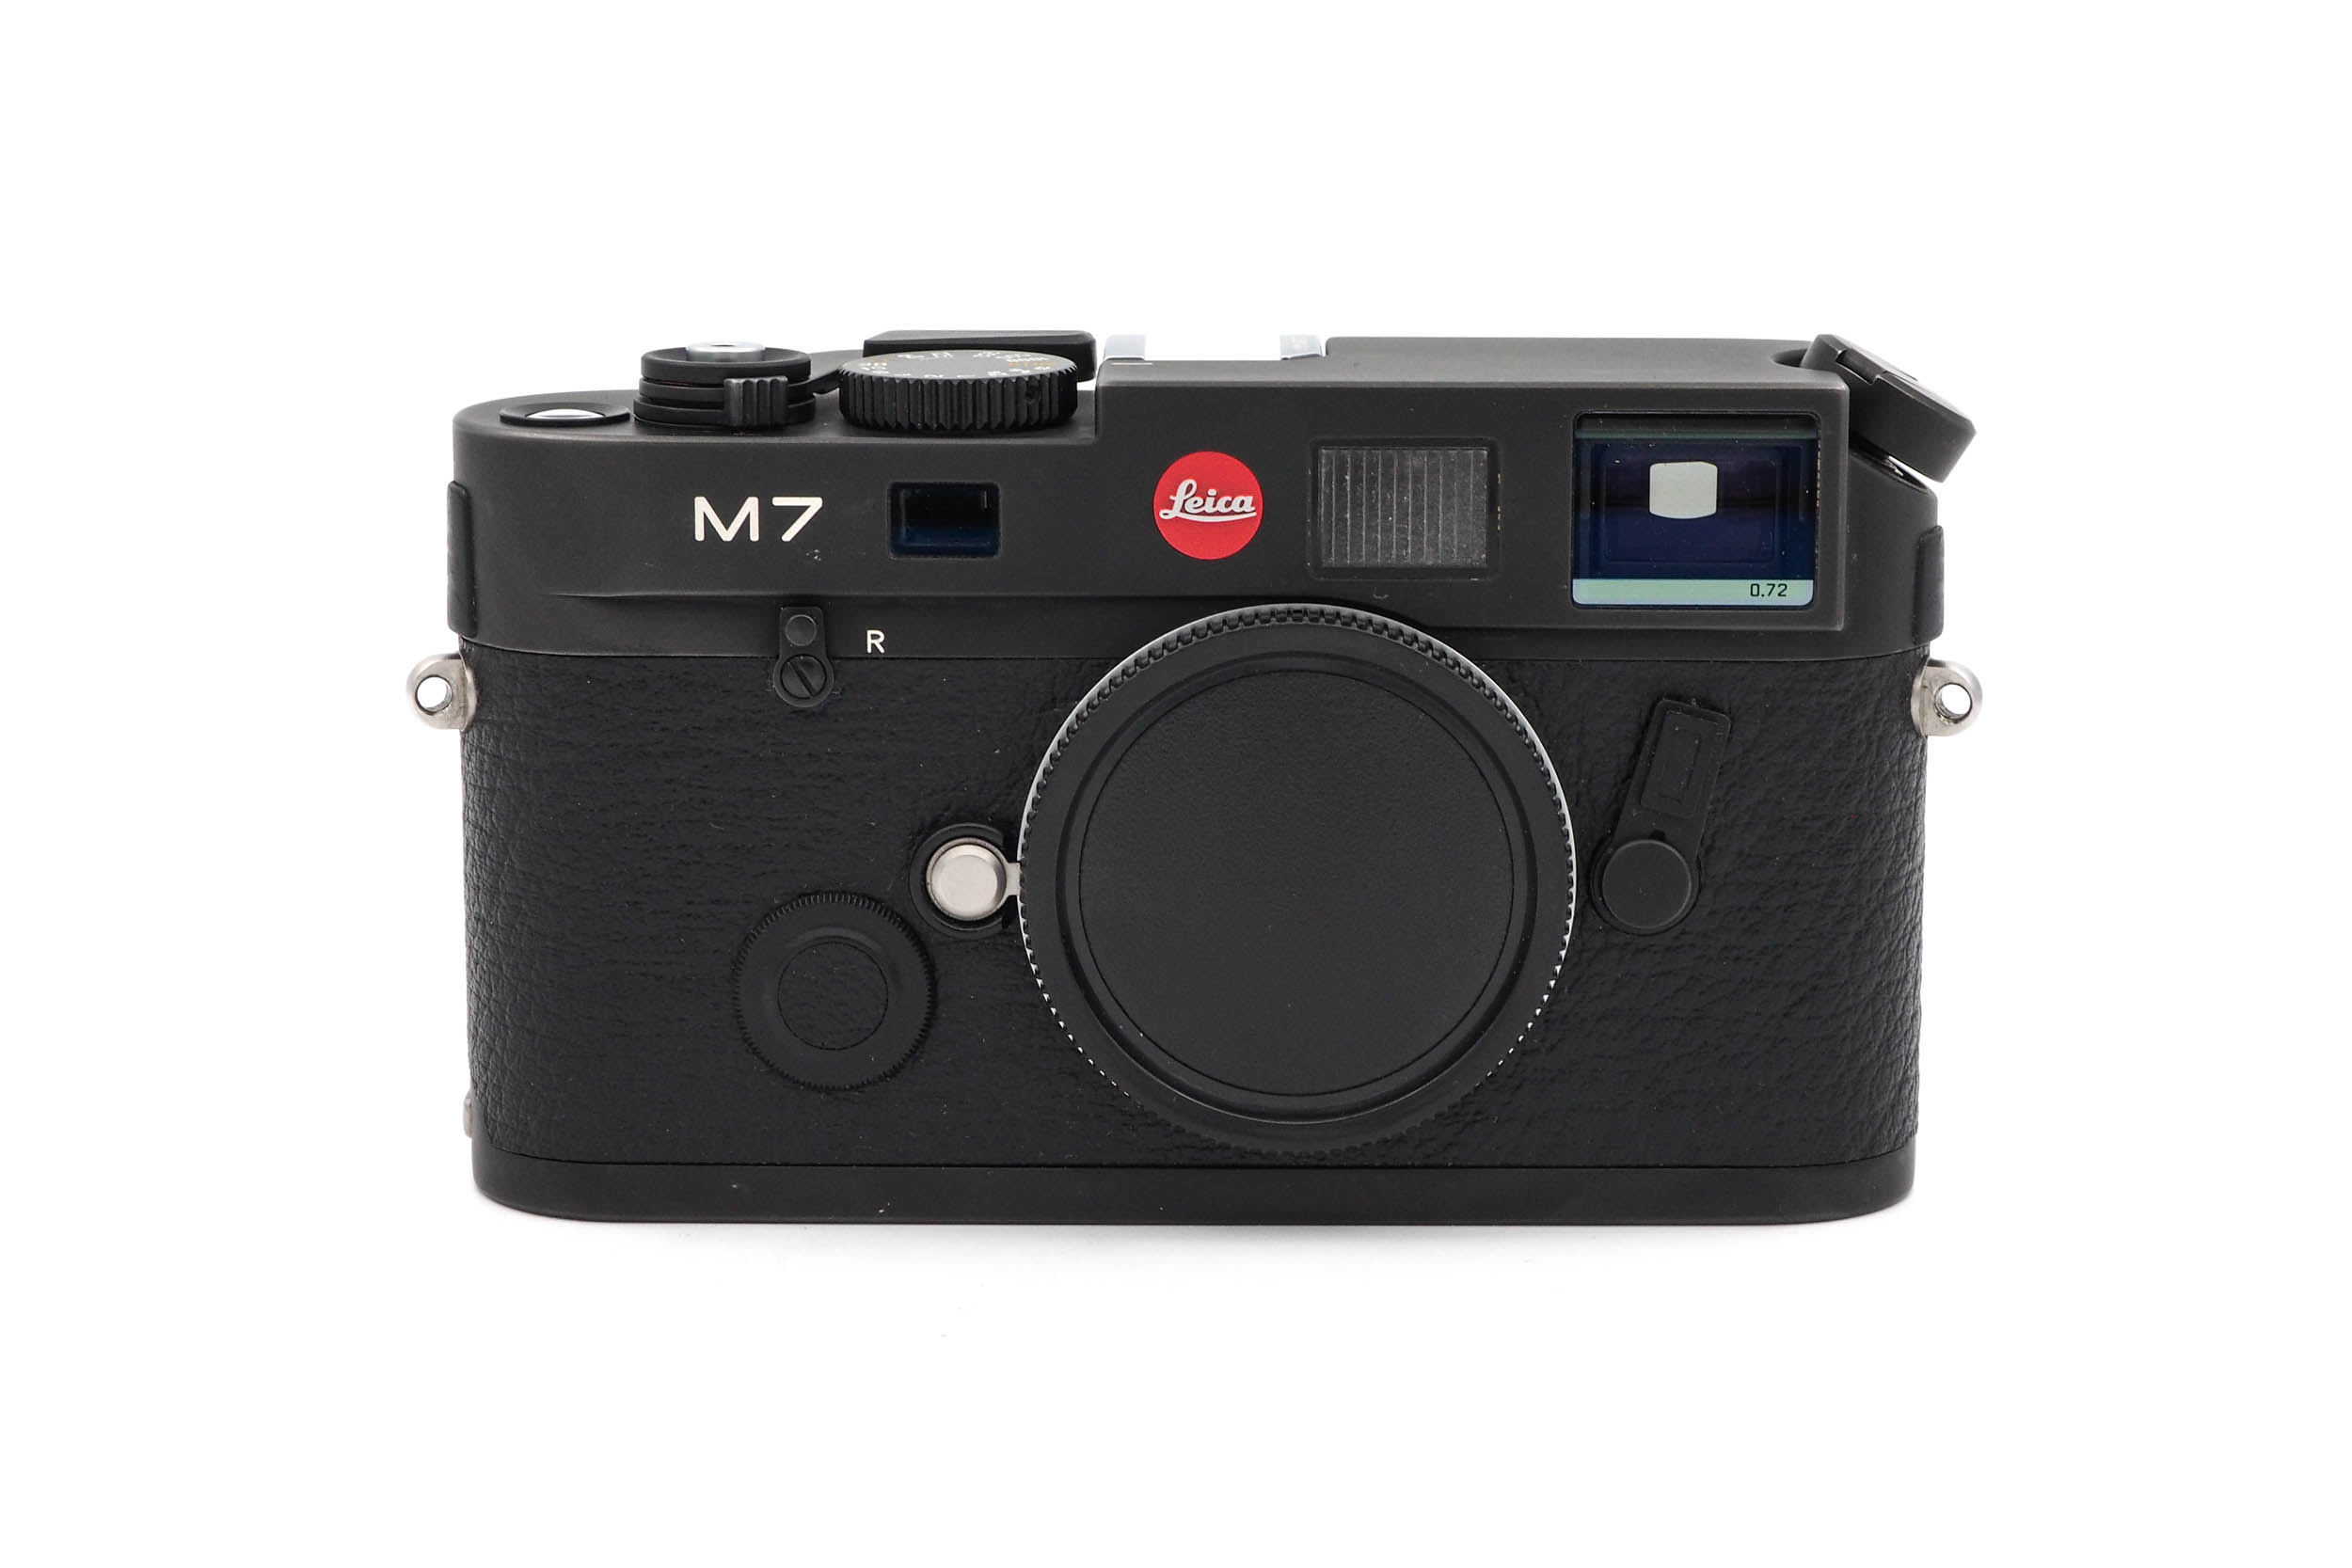 Leica M7 0.72